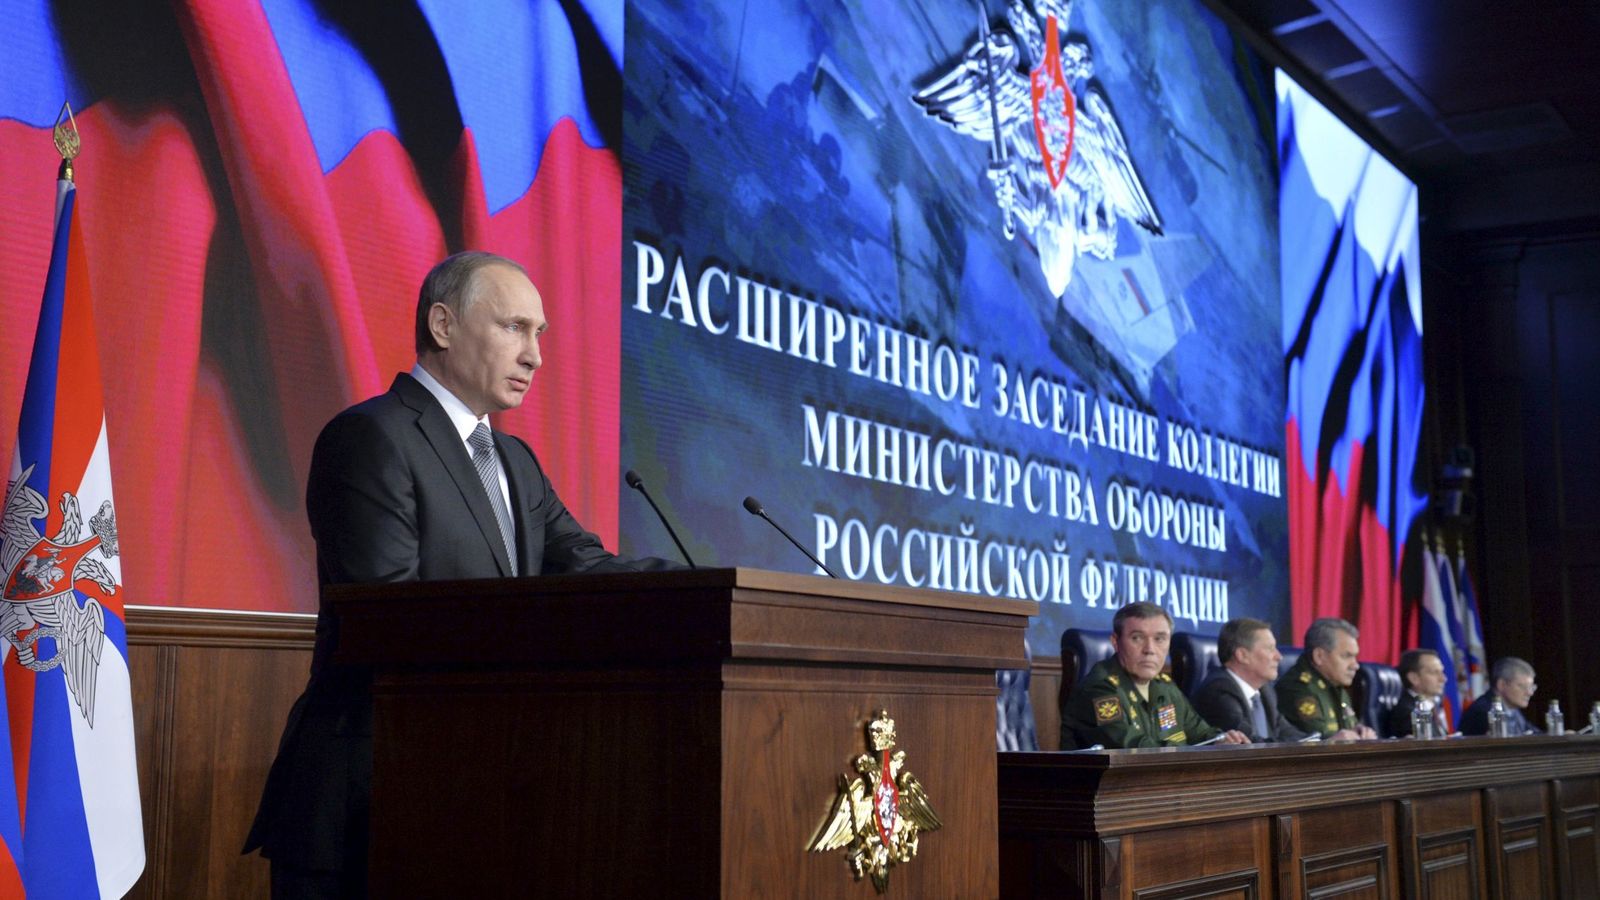 Foto: El presidente de Rusia durante una conferencia de prensa en el Ministerio de Defensa, en Moscú, el 11 de diciembre de 2015 (Reuters).